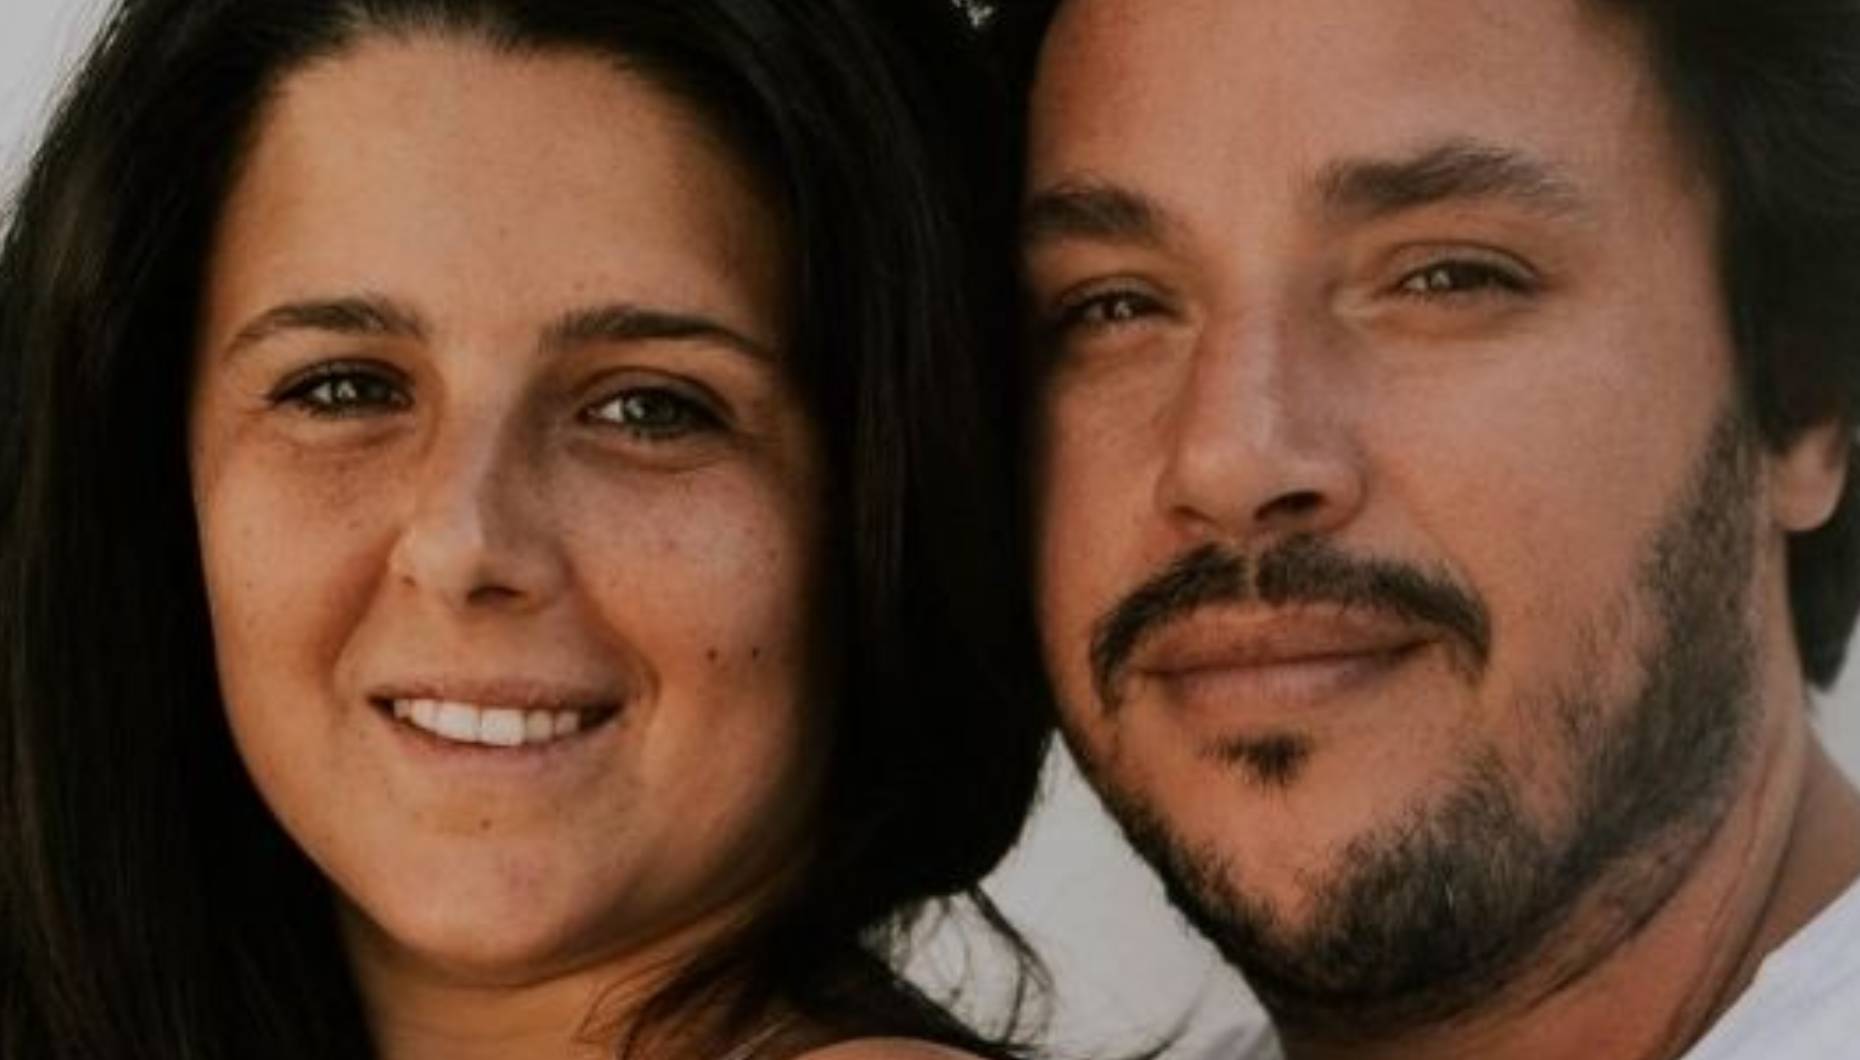 Maria Pitta Paixão está divorciada: "Os miúdos serão sempre a nossa prioridade"